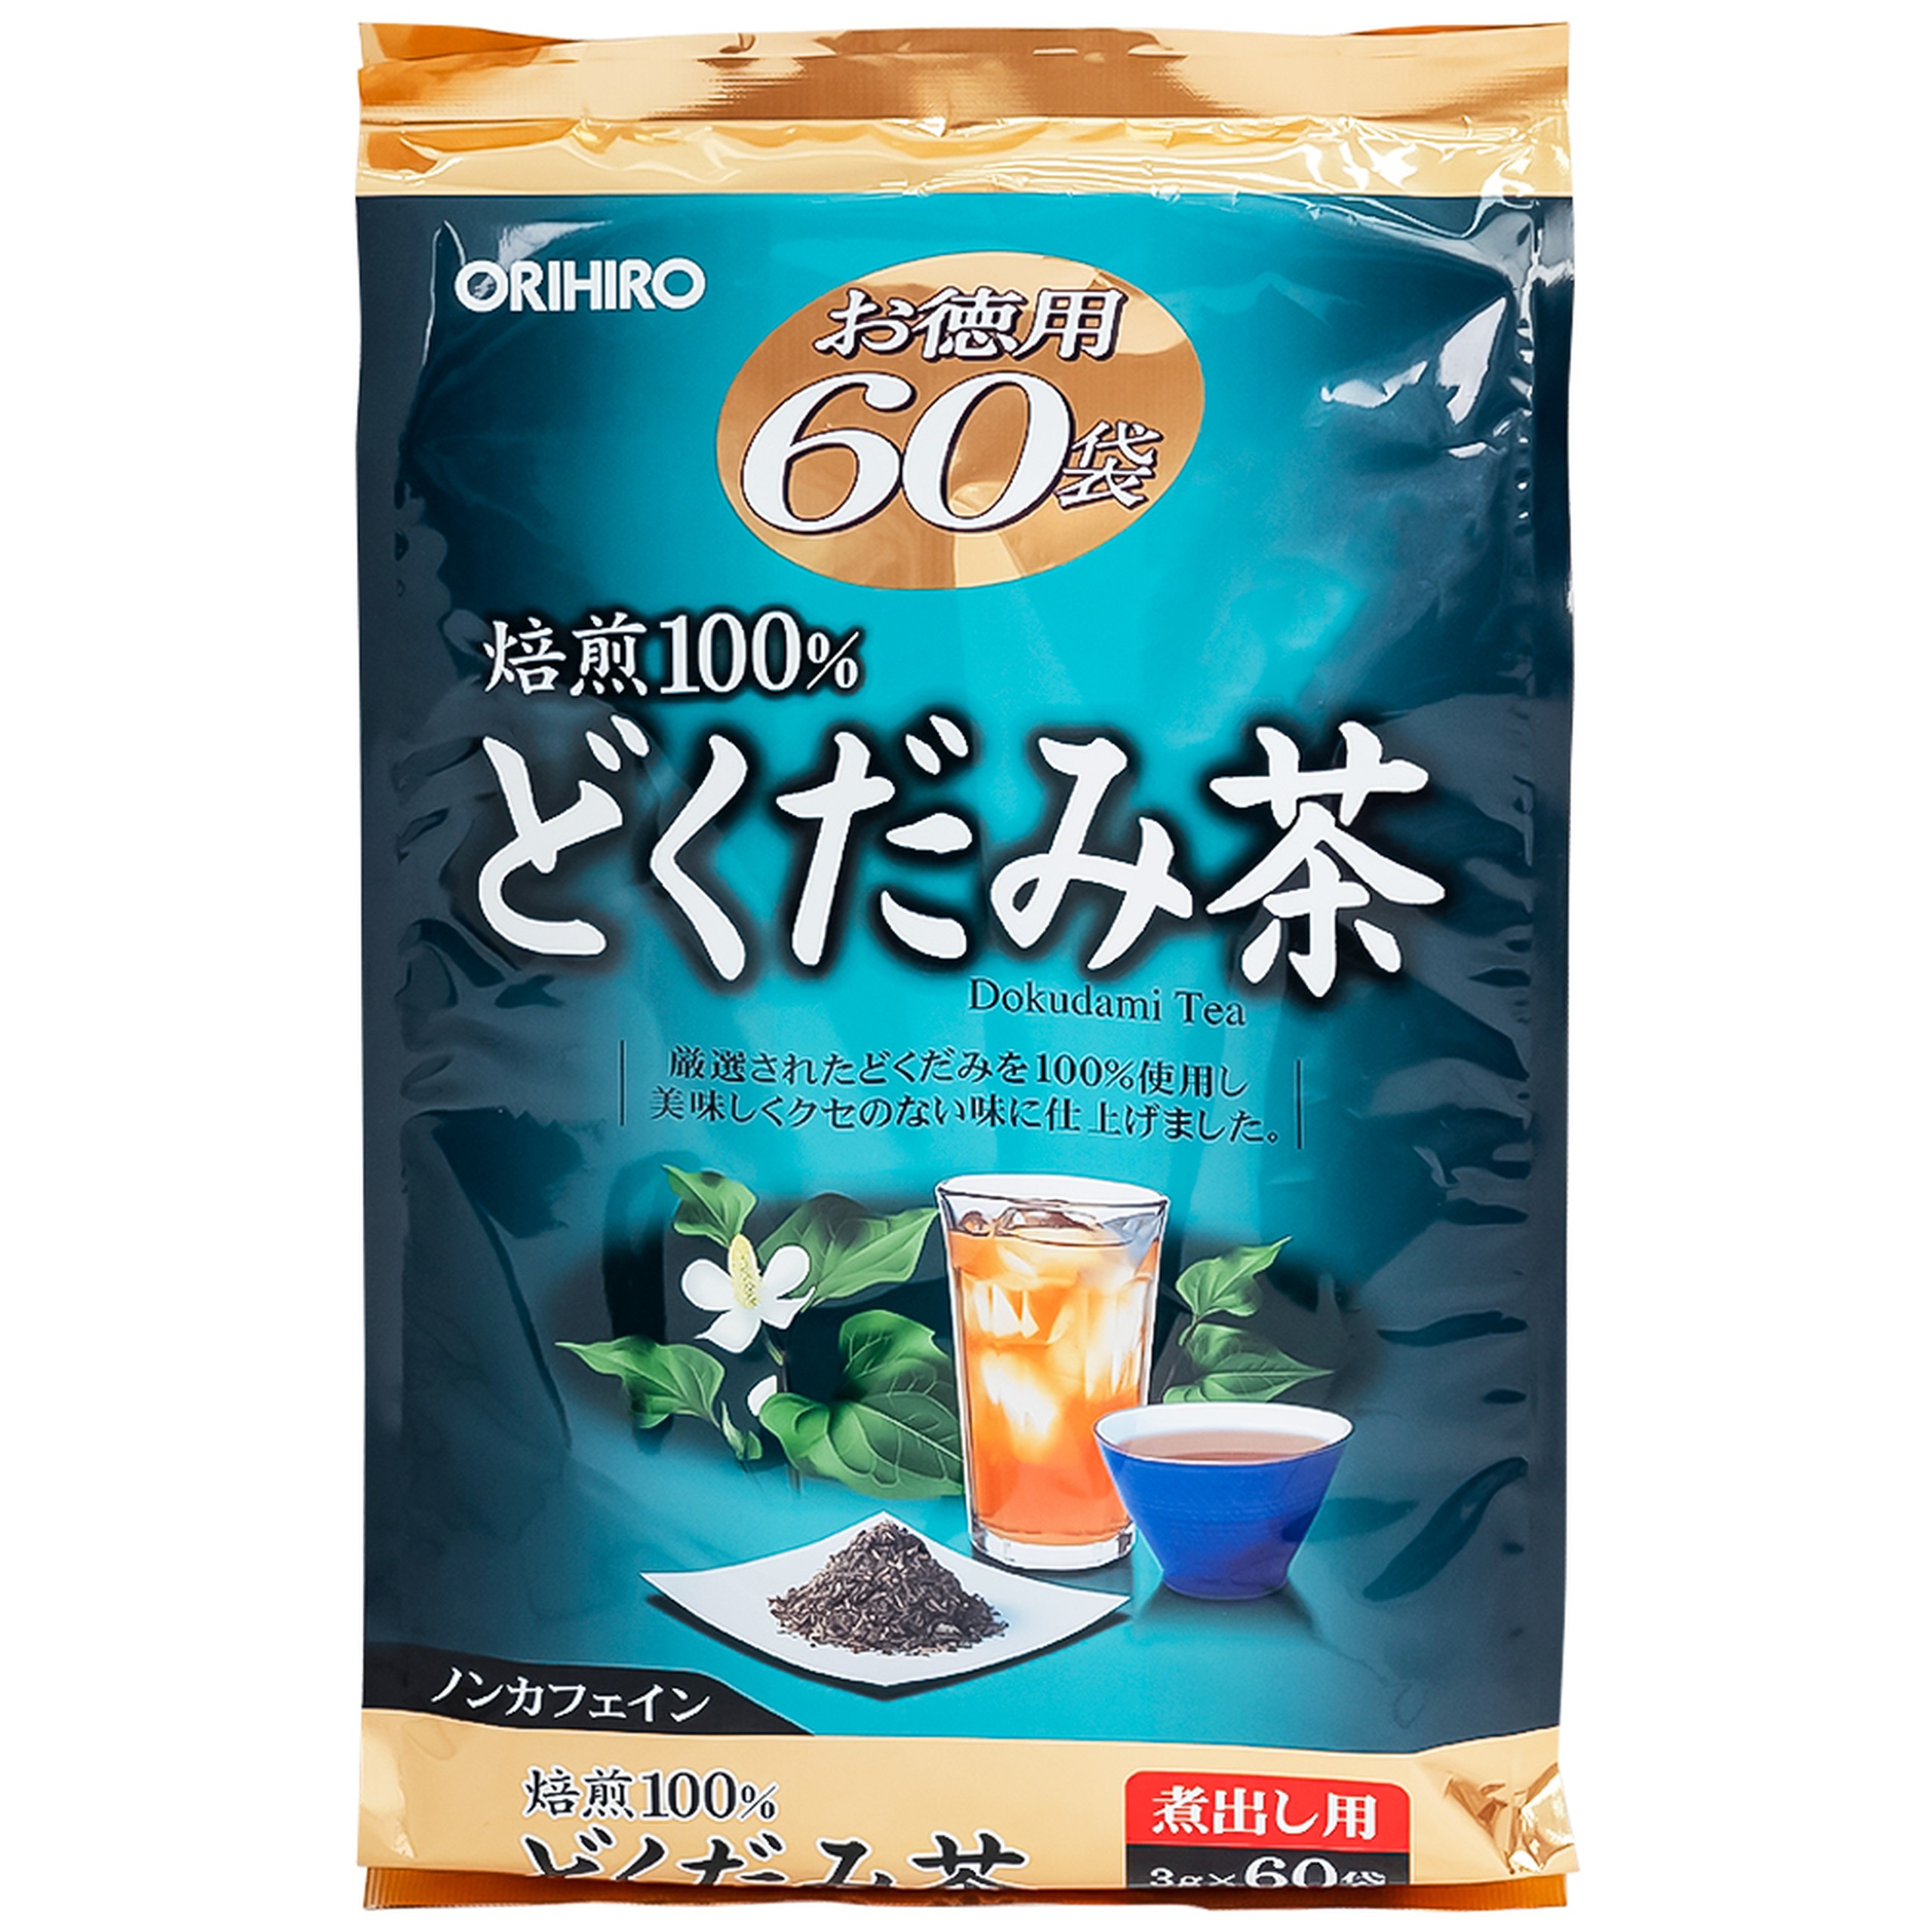 Trà diếp cá Orihiro túi lọc giúp thanh nhiệt, giải độc, nhuận tràng, giảm triệu chứng táo bón (60 túi x 3g)